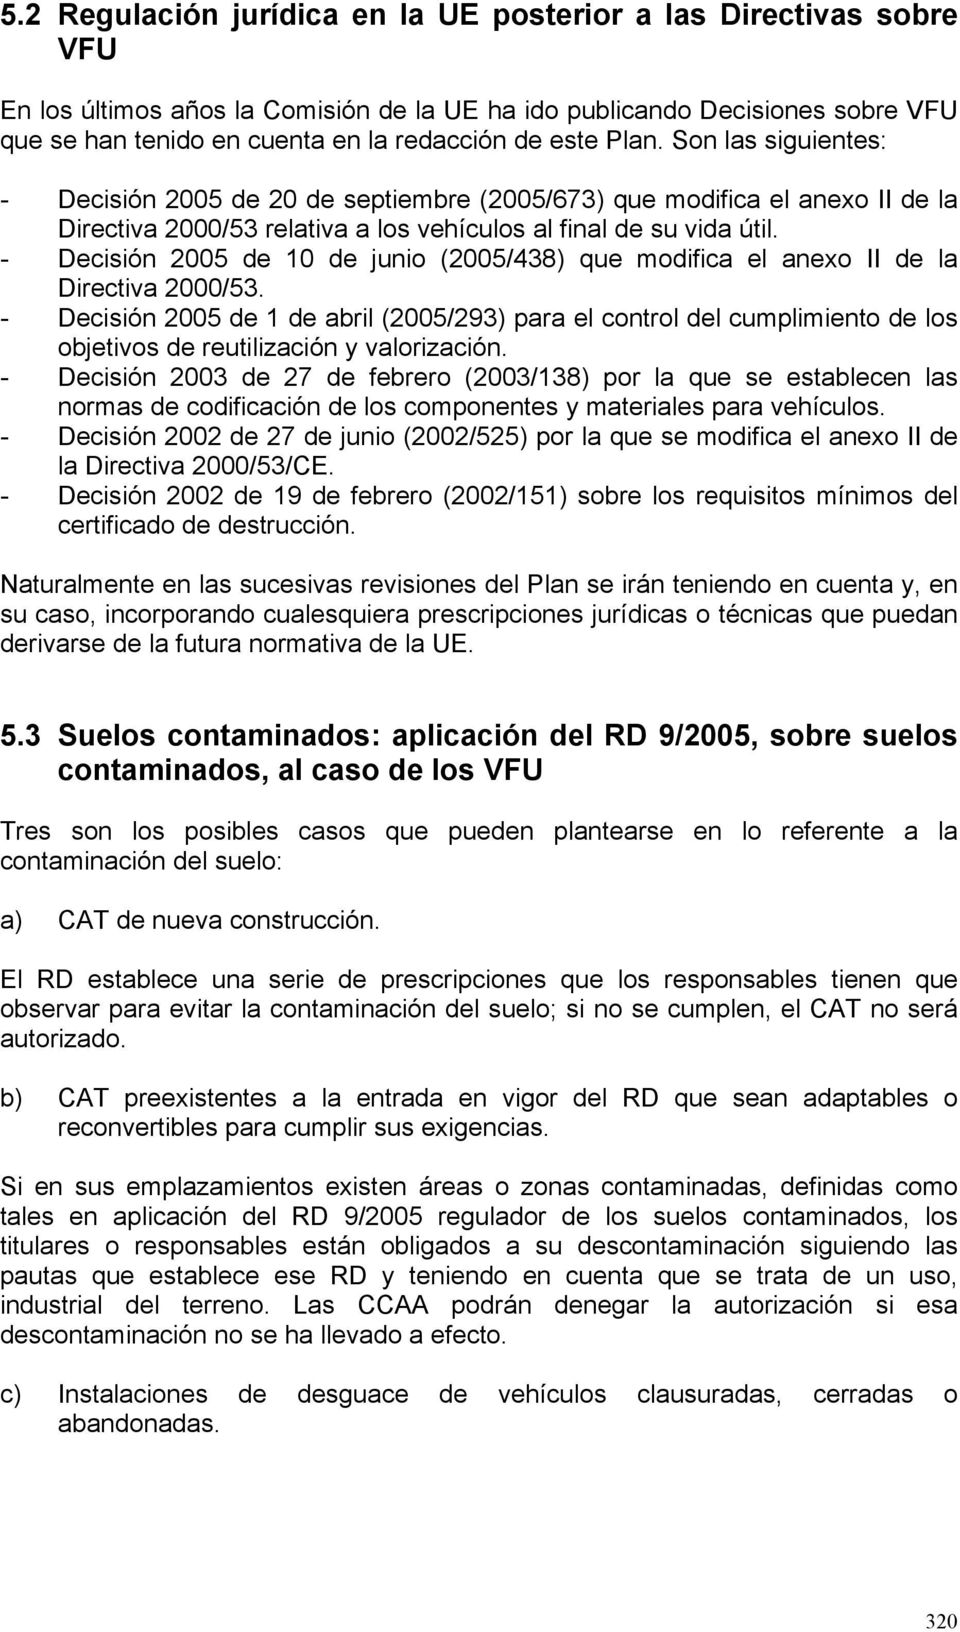 - Decisión 2005 de 10 de junio (2005/438) que modifica el anexo II de la Directiva 2000/53.